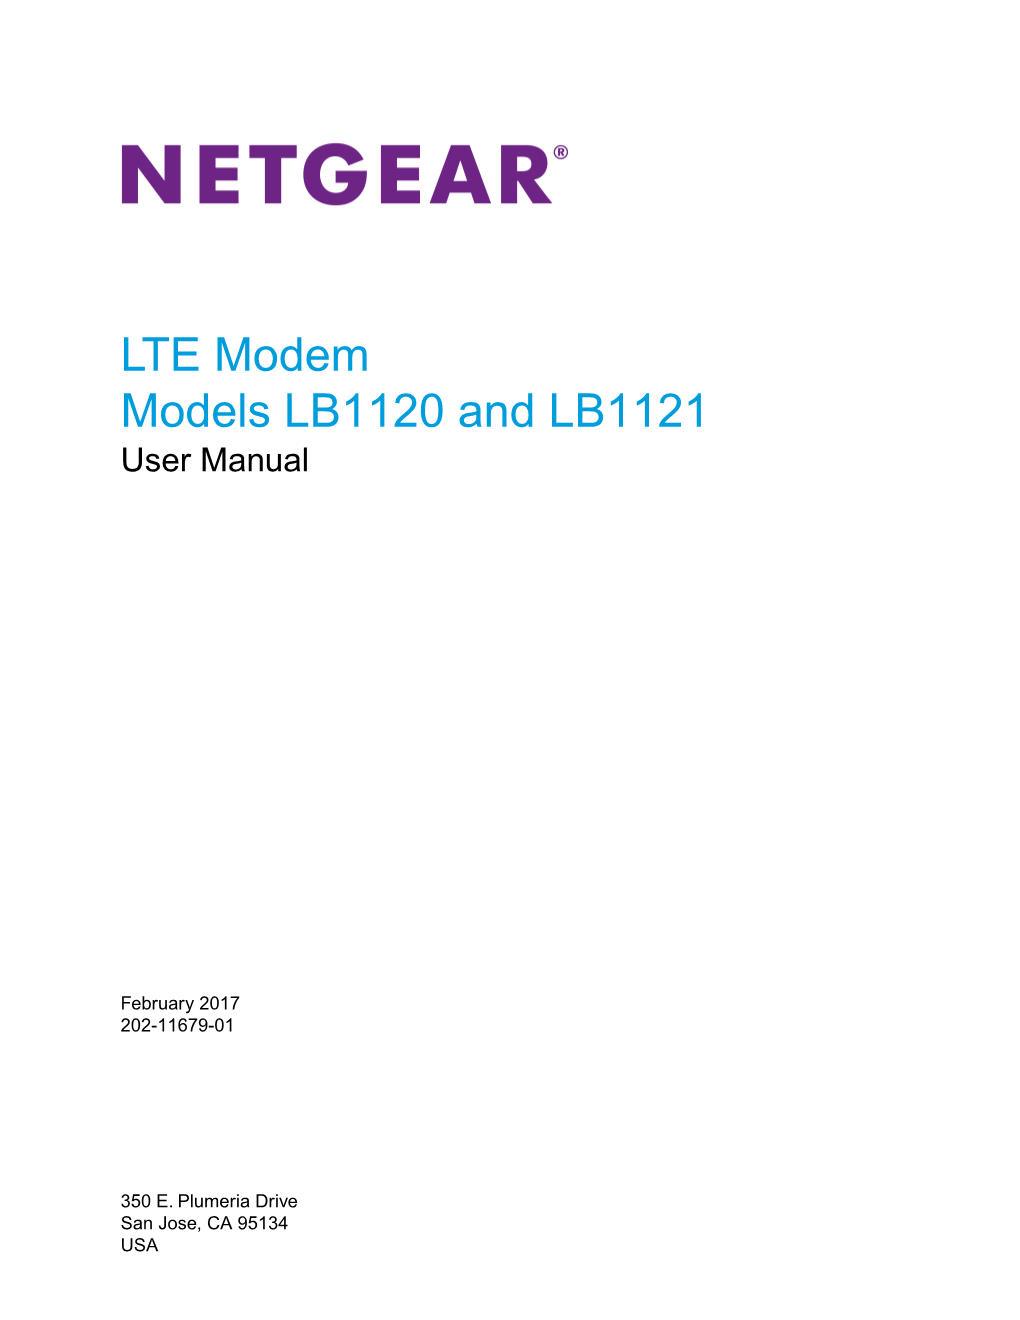 LTE Modem Models LB1120 and LB1121 User Manual